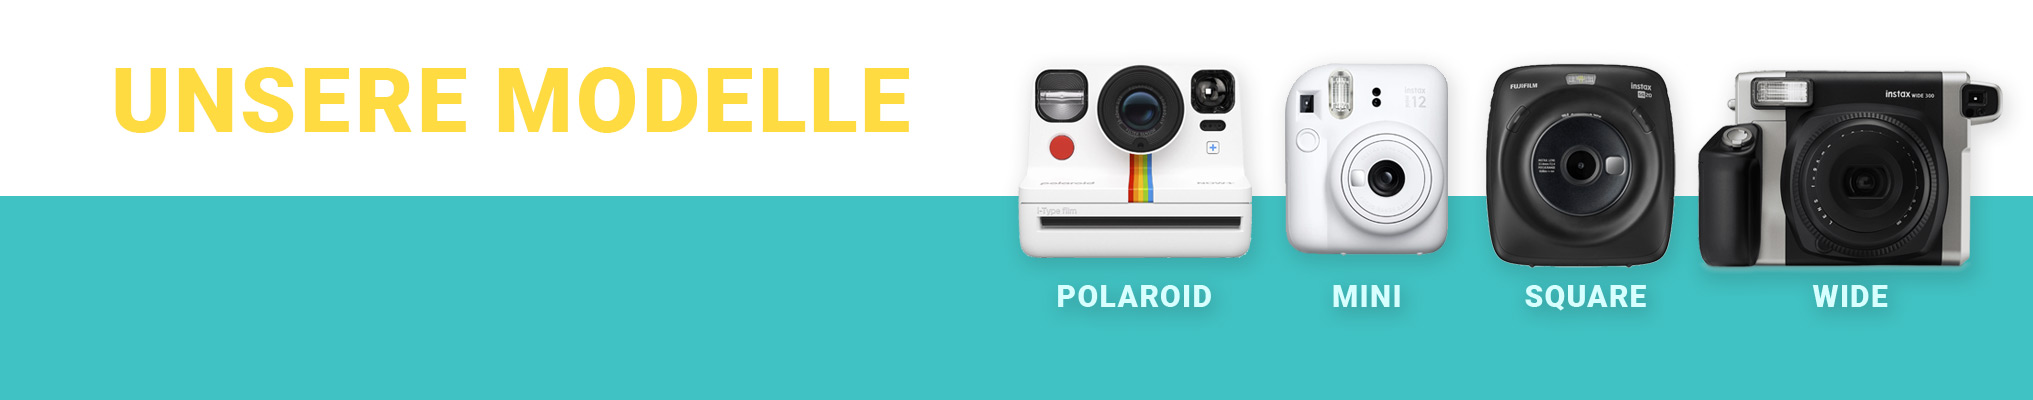 Unsere Polaroid & Instax Kameras zur Miete: Polaroid Now+ i-Type, Instax Mini, Instax Square, Instax Wide